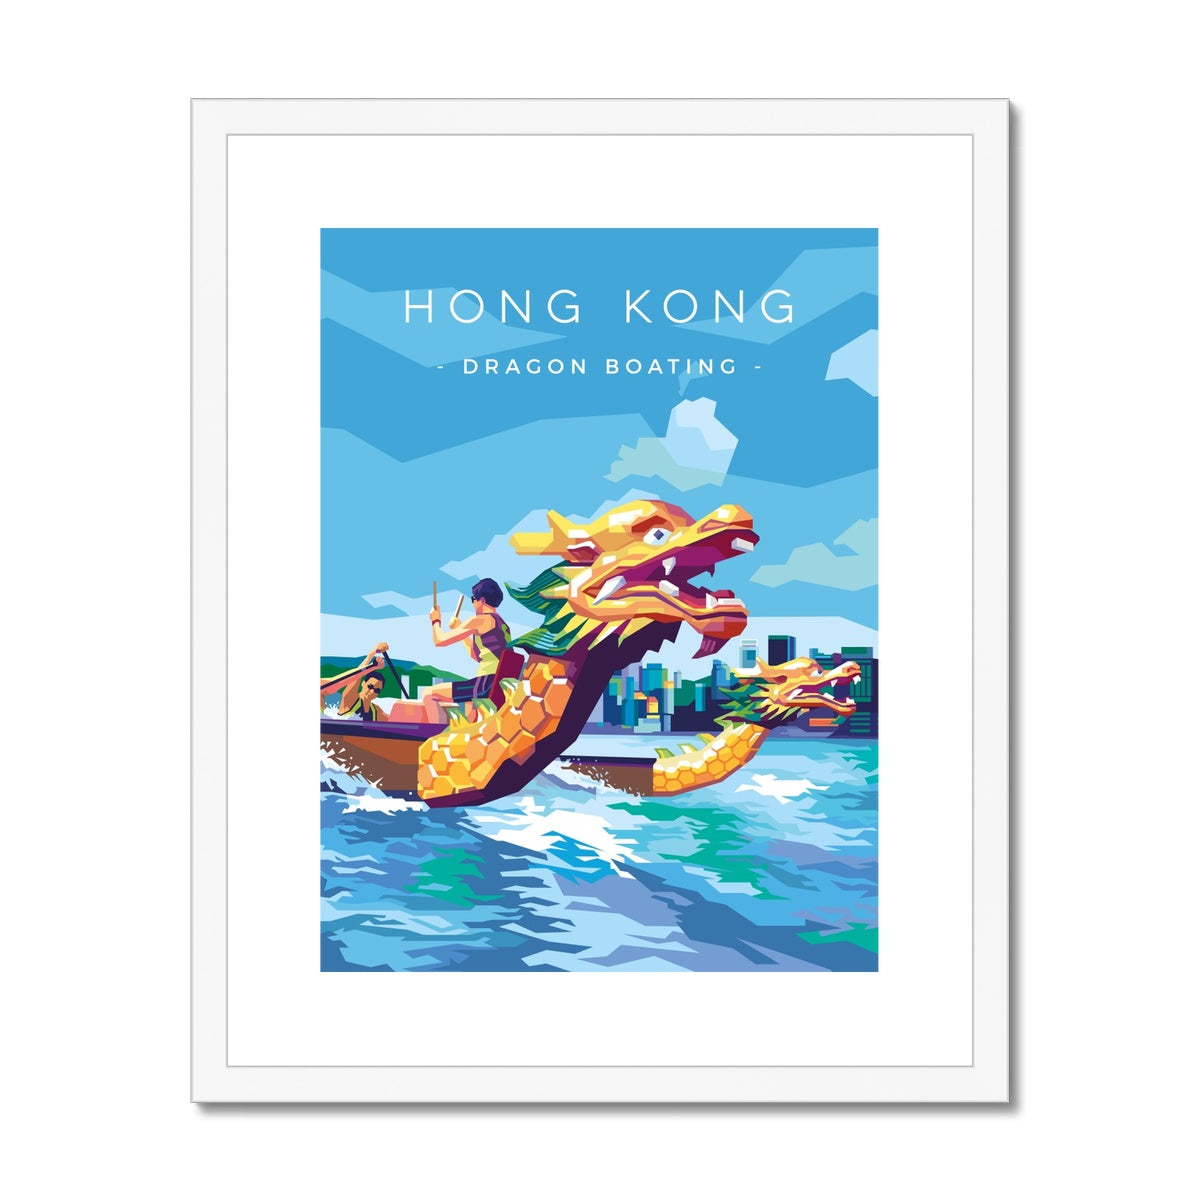 Hong Kong Travel - Dragon Boating Framed & Mounted Print